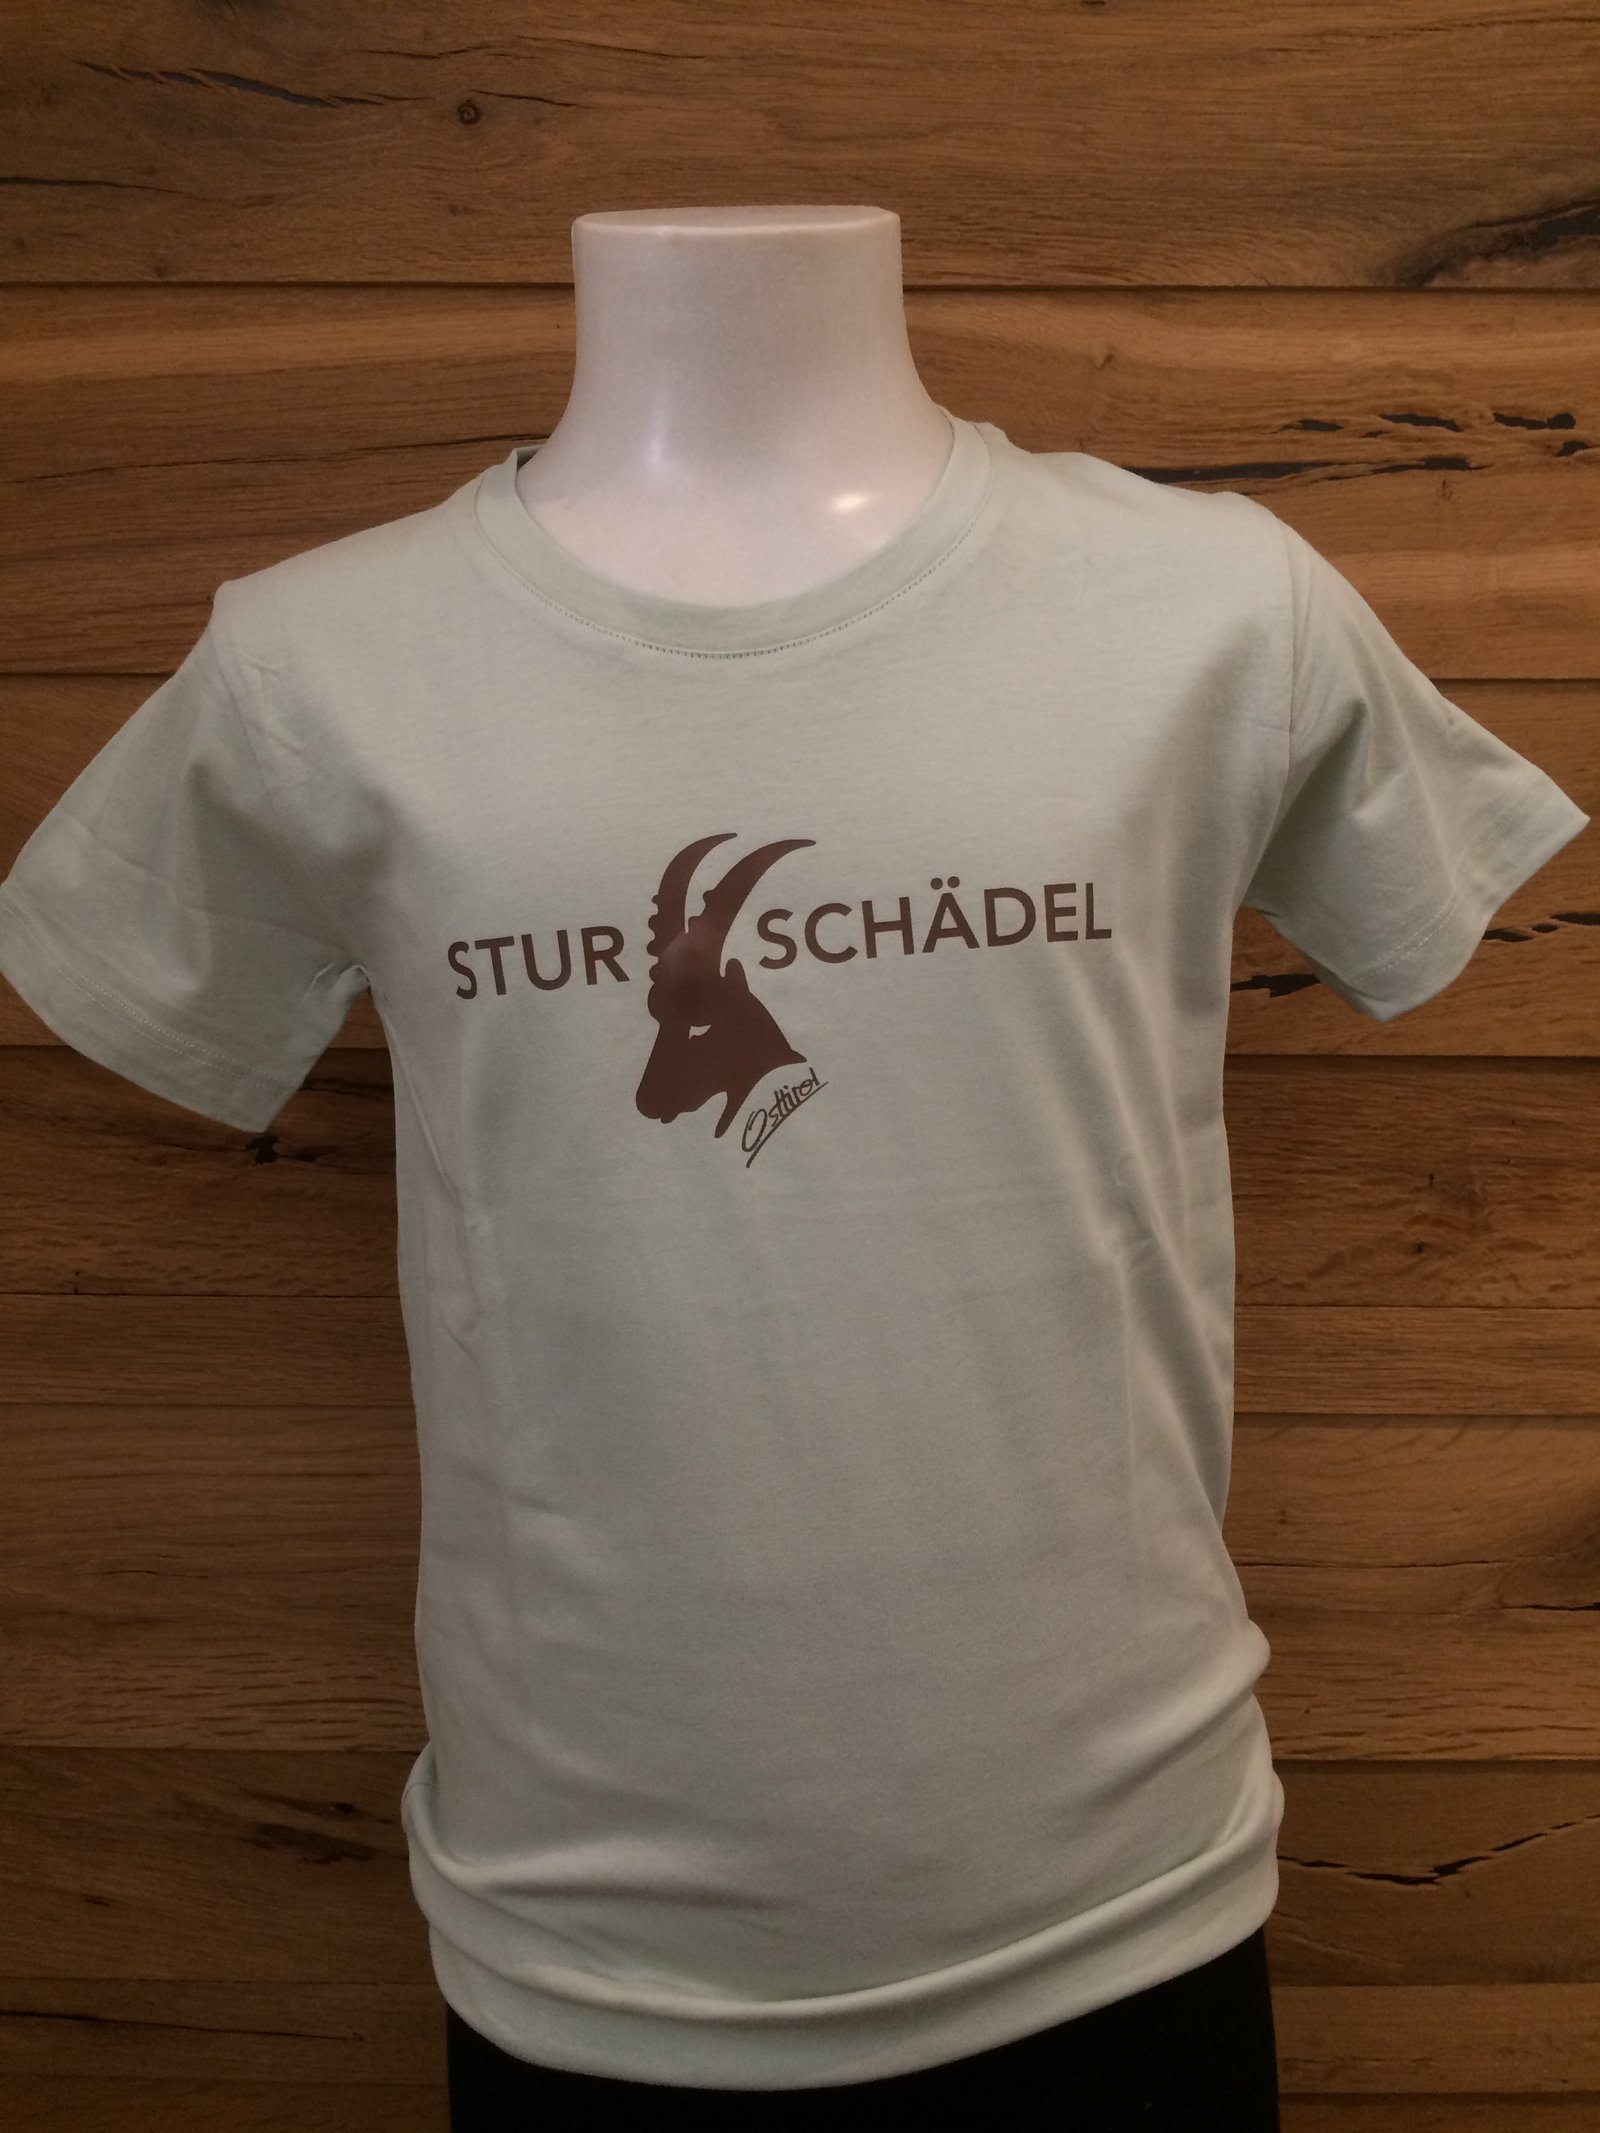 Kinder T-Shirt "Sturschädel" salbei